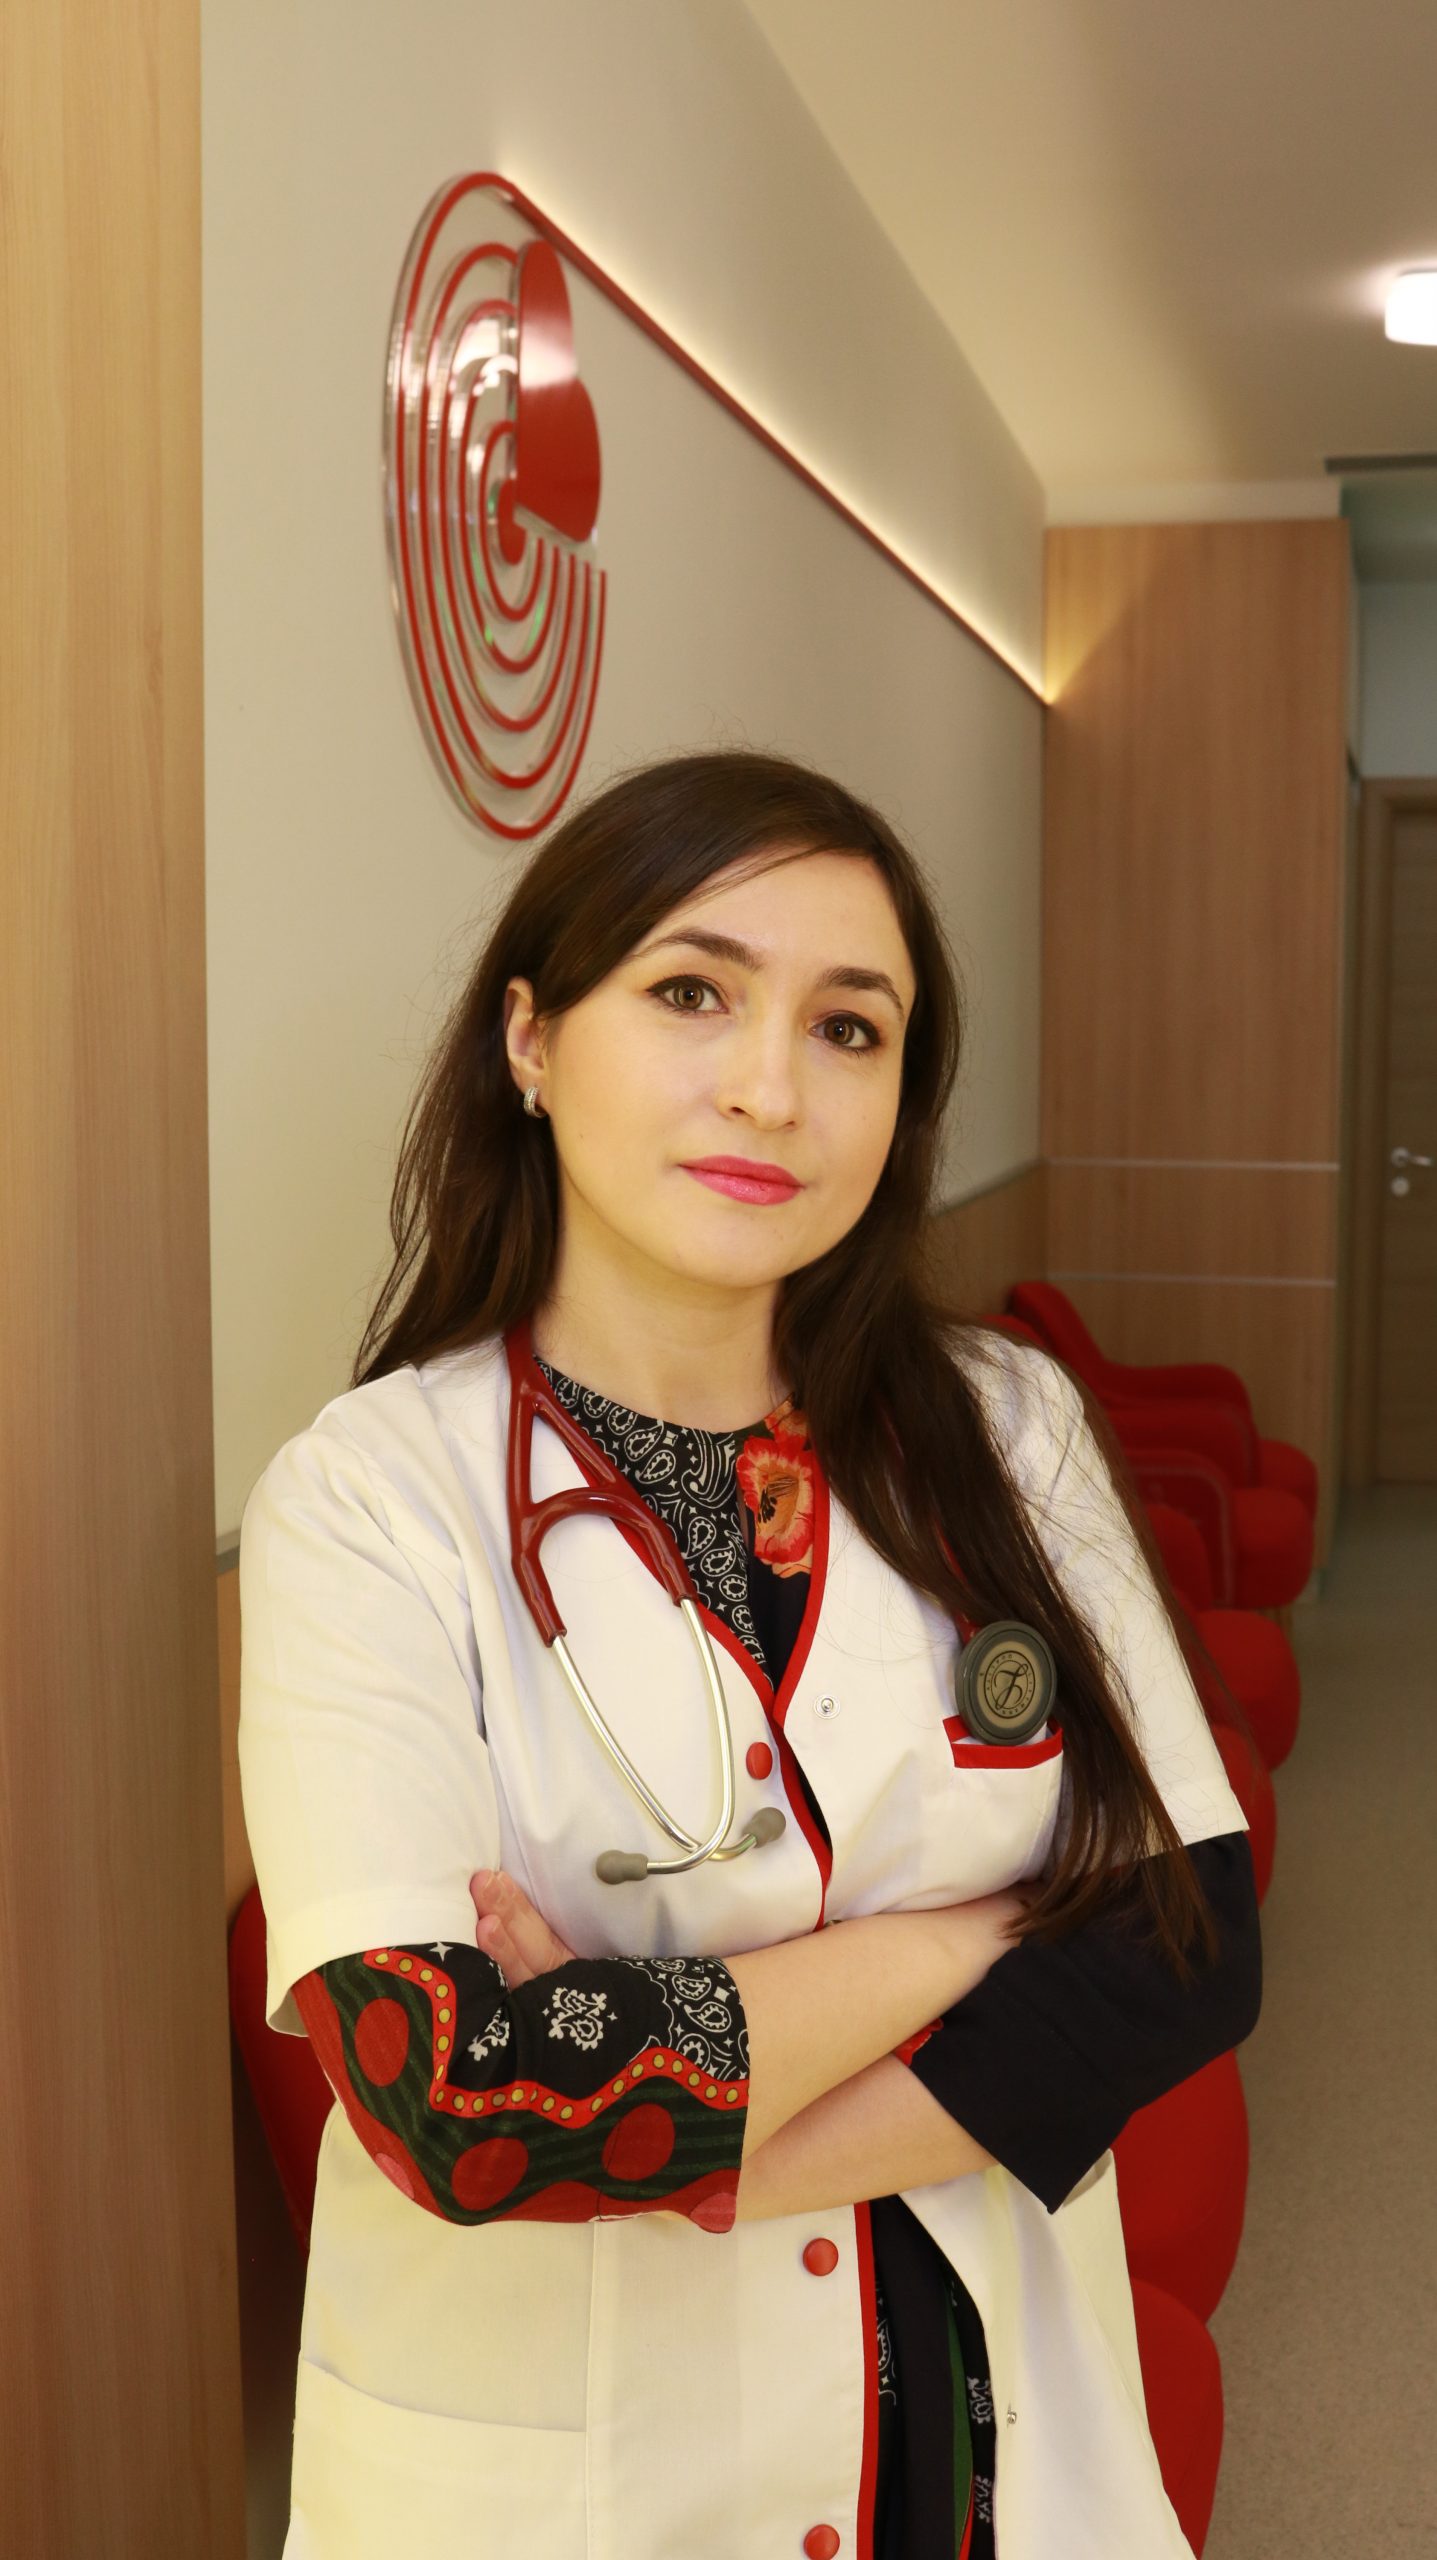 Dr. Diana Ciobanu